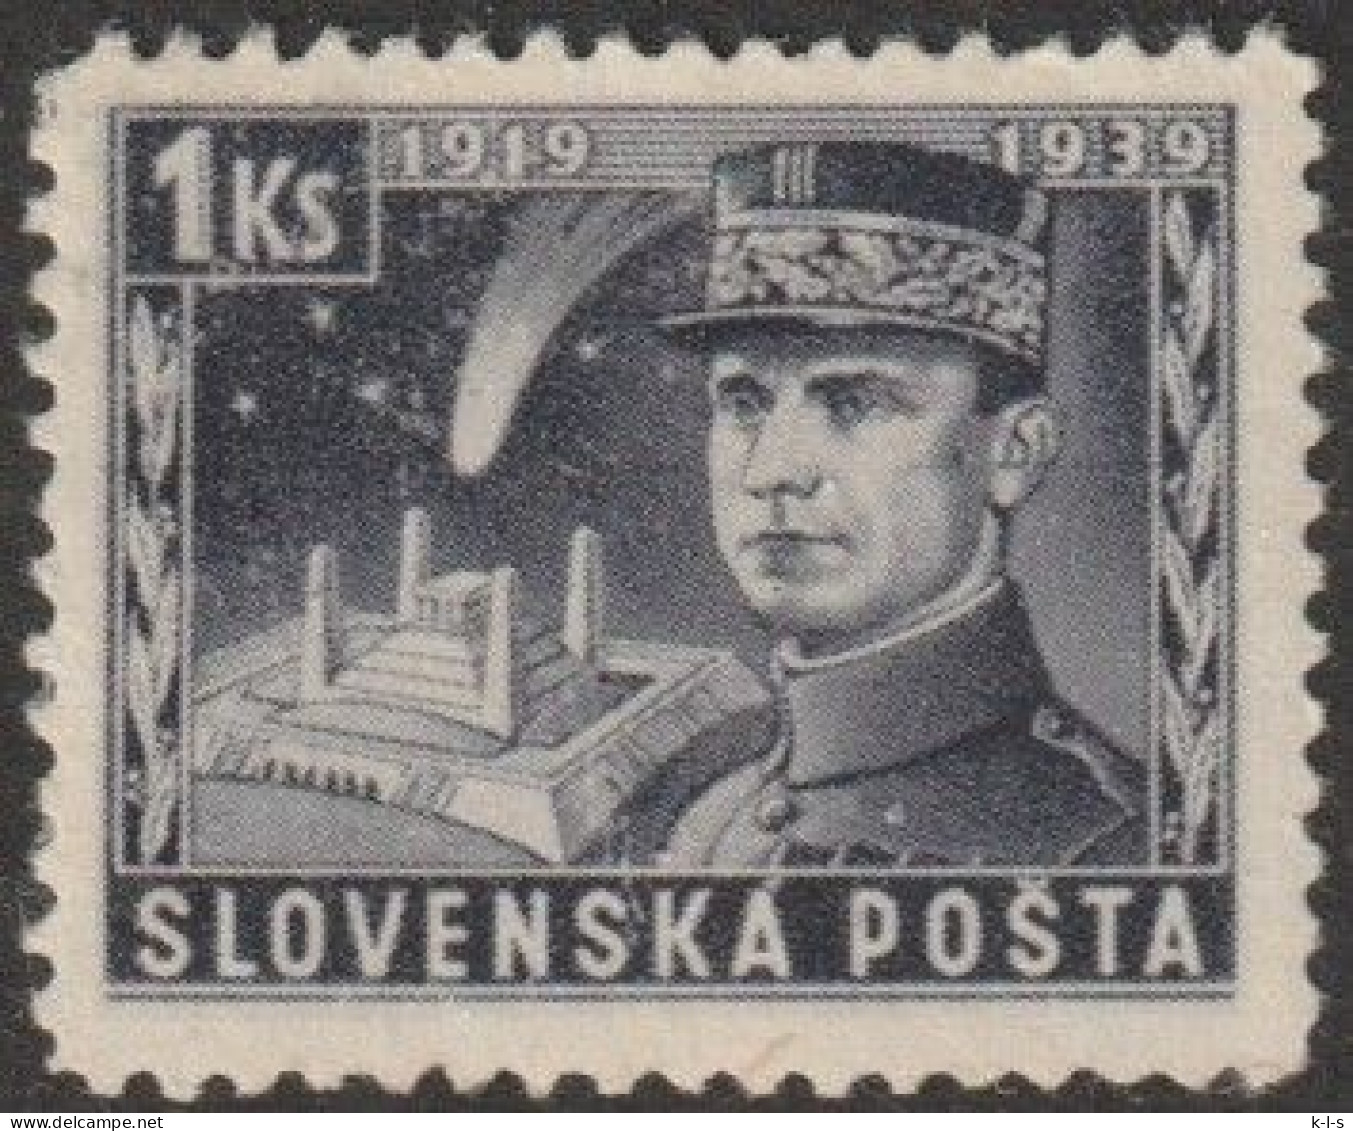 Slowakei: 1939, Mi. Nr. III, 1 Ks..  20. Todestag Von Milan Štefánik.   **/MNH - Nuovi